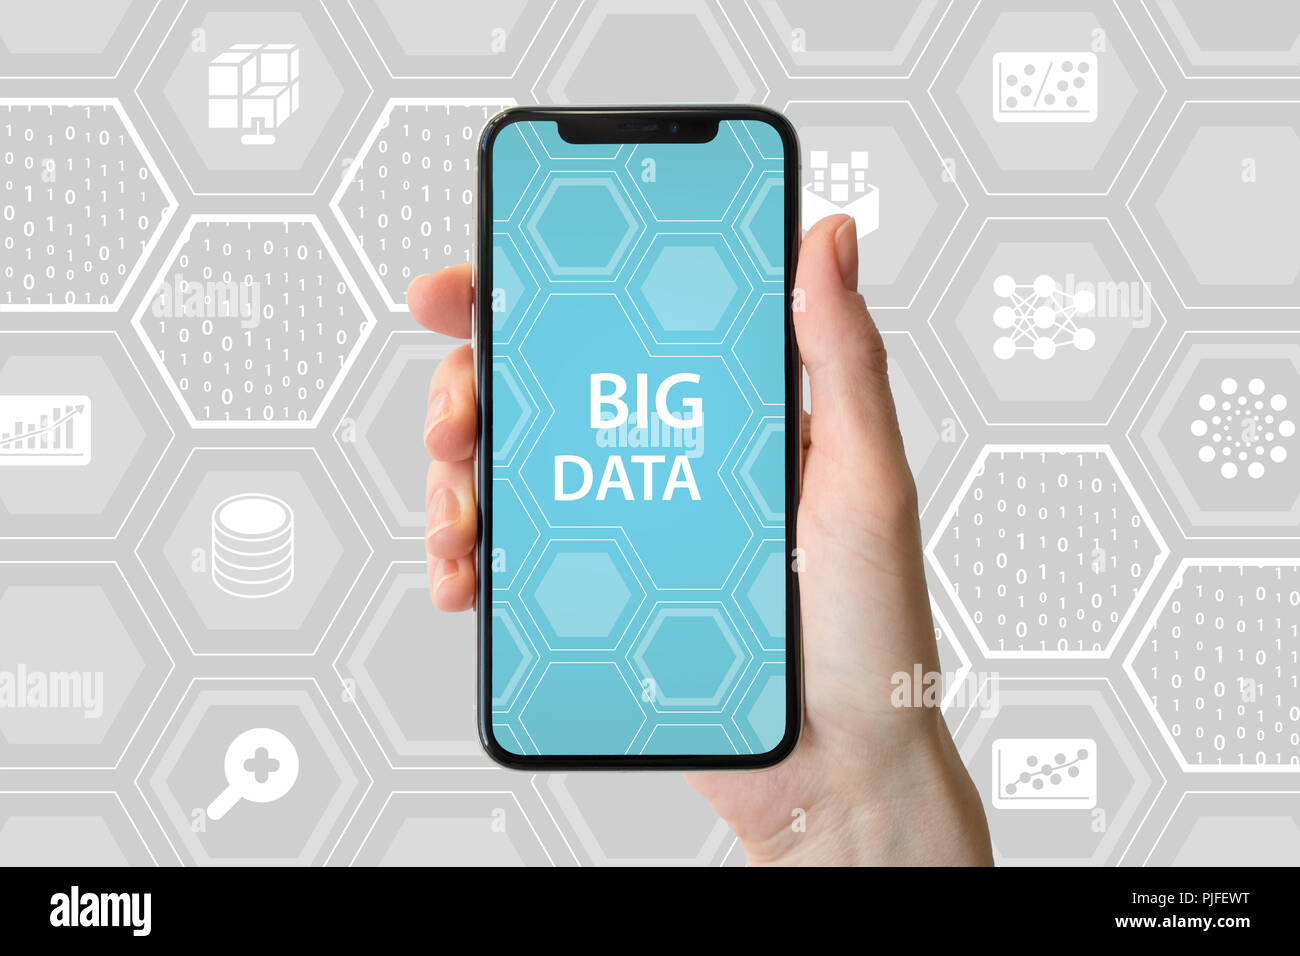 Concept de big data. Main tenant cadre moderne-smartphone libre en face de fond neutre avec des icônes Banque D'Images